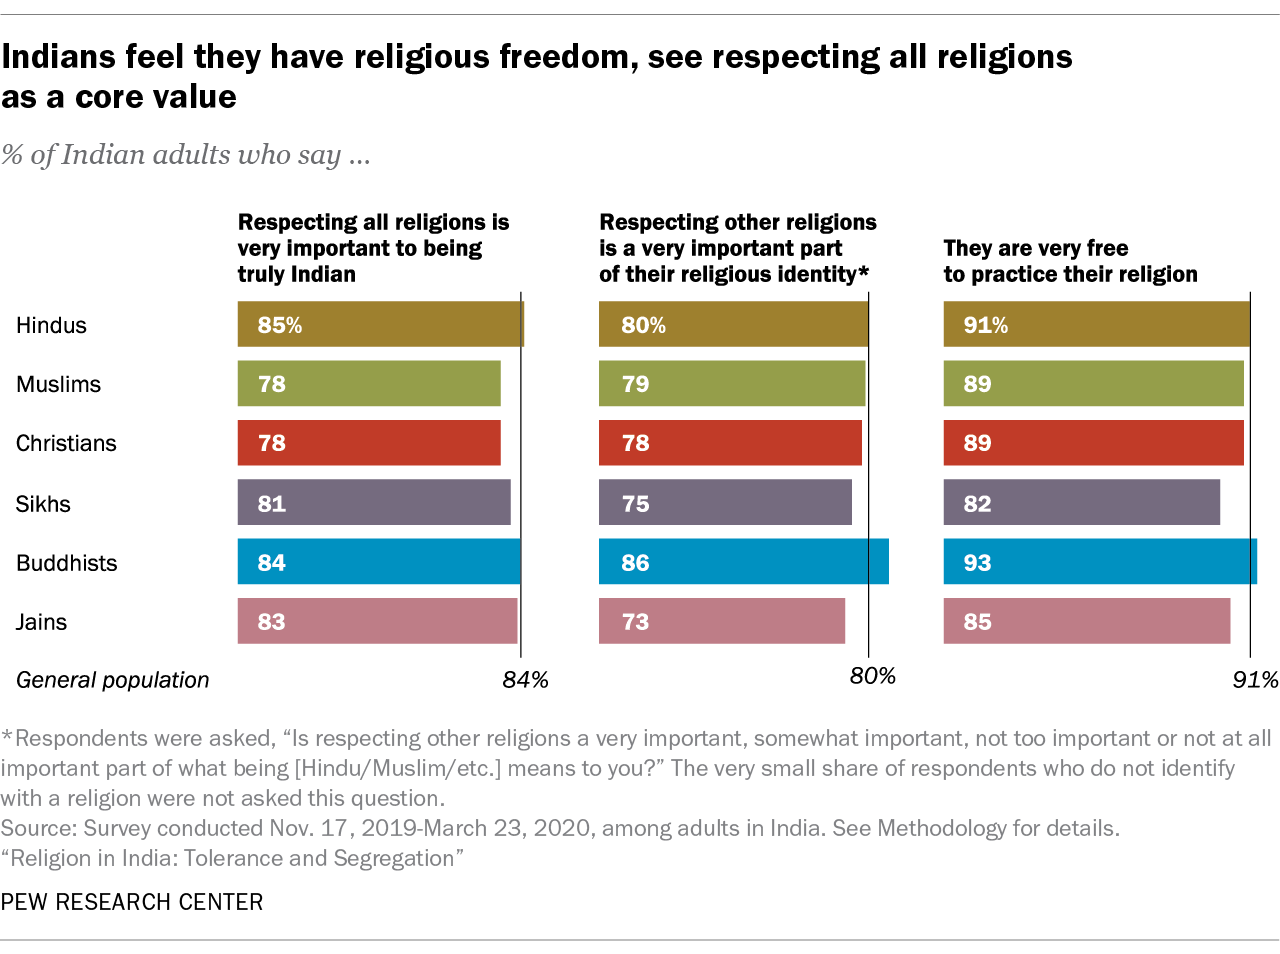 Gli indiani sentono di avere la libertà religiosa, vedono il rispetto di tutte le religioni come un valore fondamentale